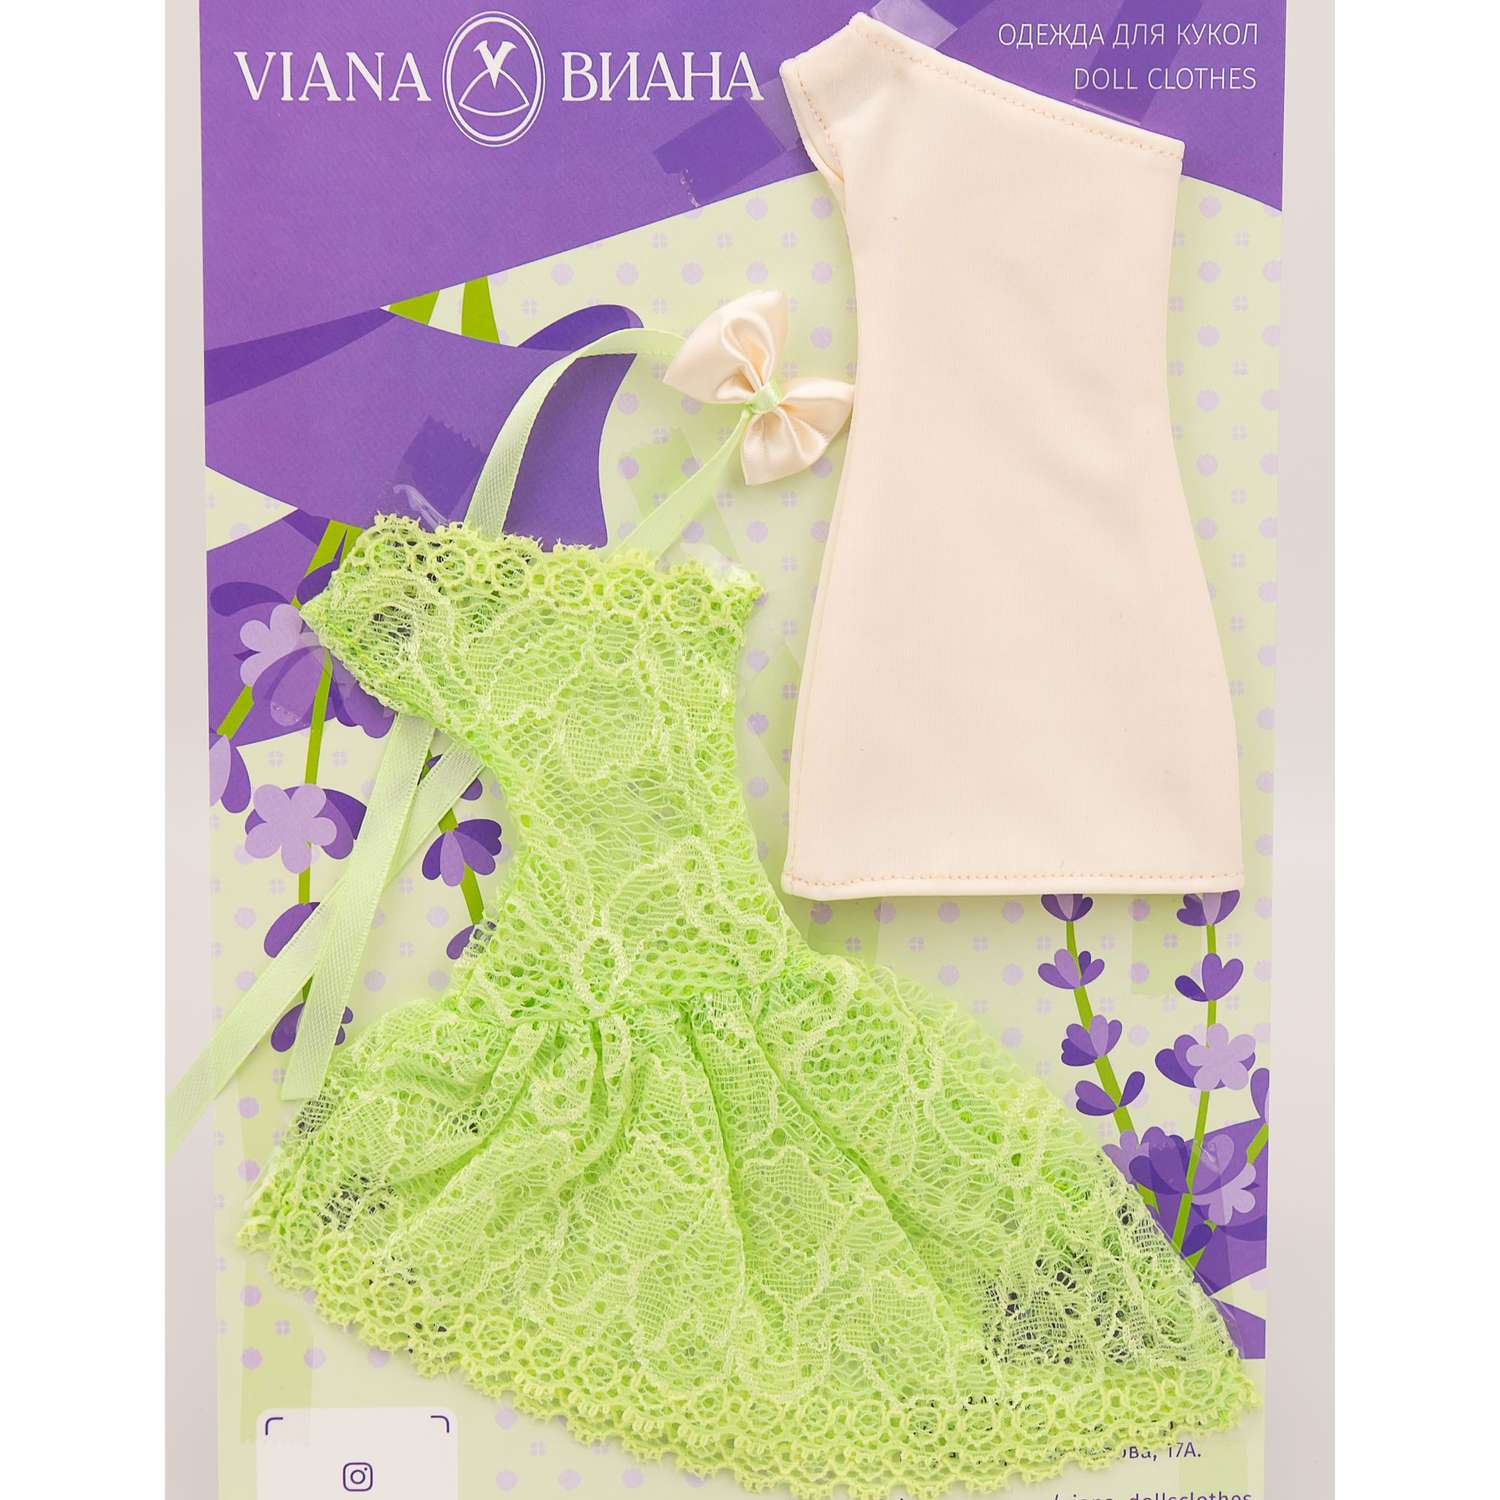 Одежда для кукол типа Барби VIANA два платья цвет салатовый 1103.3 - фото 1